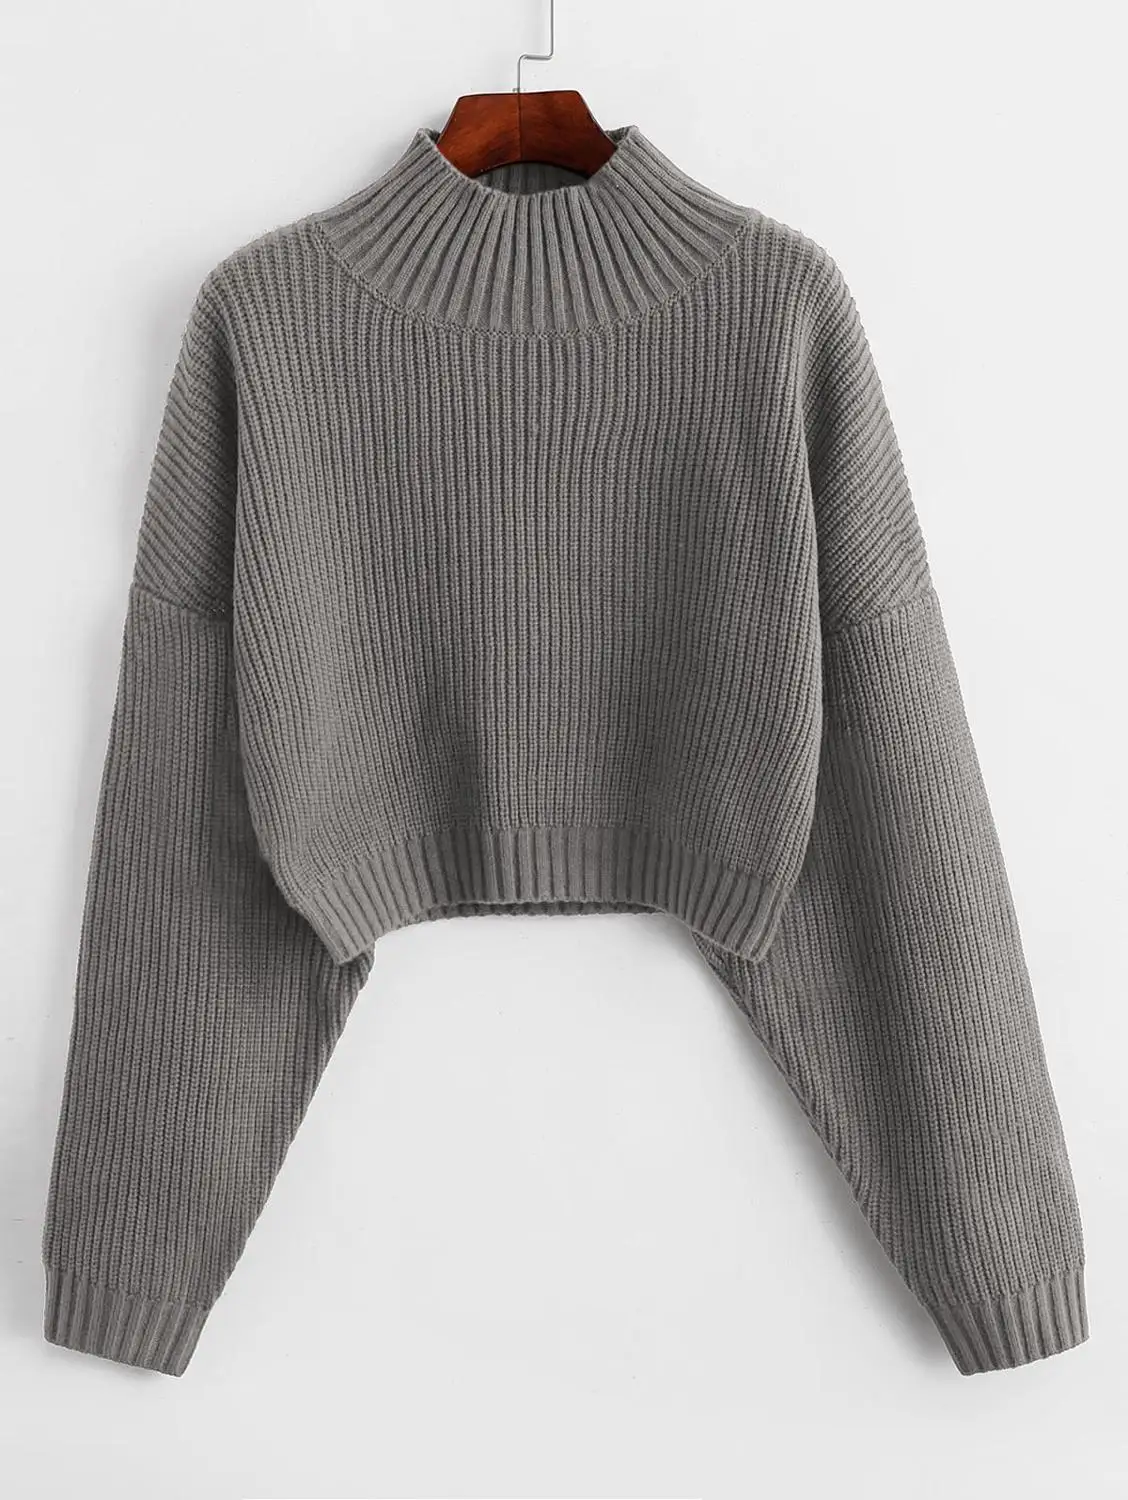 ZAFUL простой свитер с высоким воротом, осенне-зимний однотонный Повседневный женский топ,, пуловер, свитера для женщин - Цвет: Gray